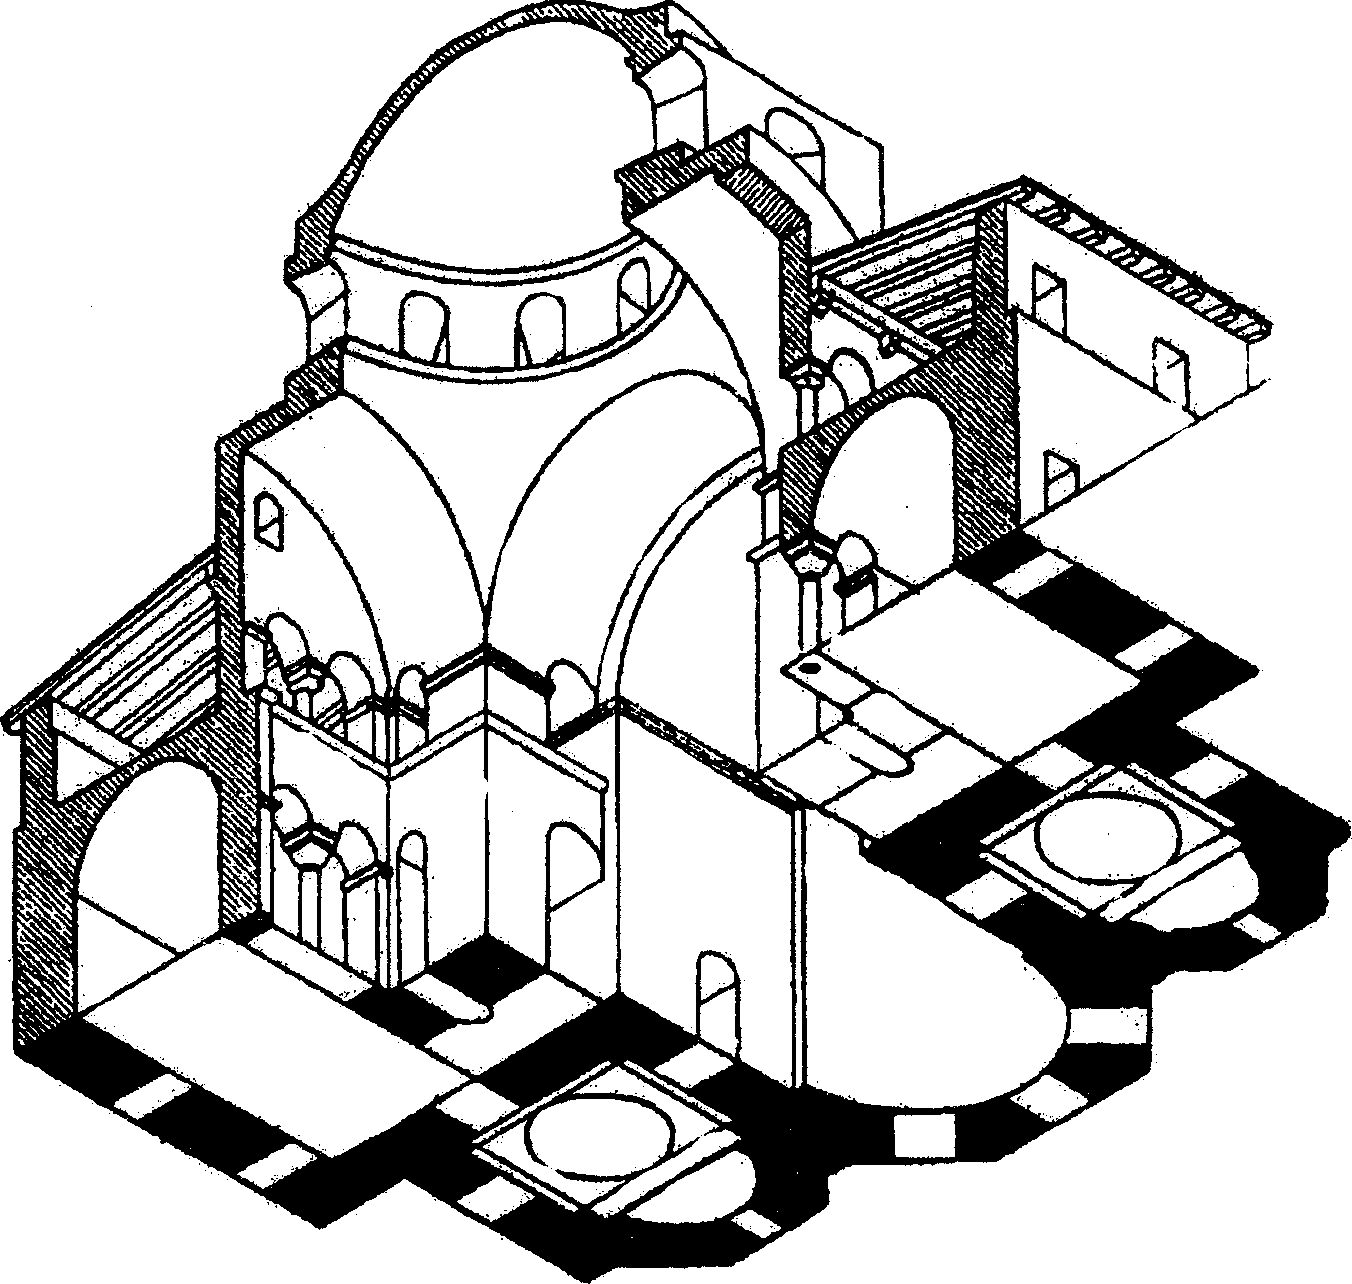 крестово купольный тип храма